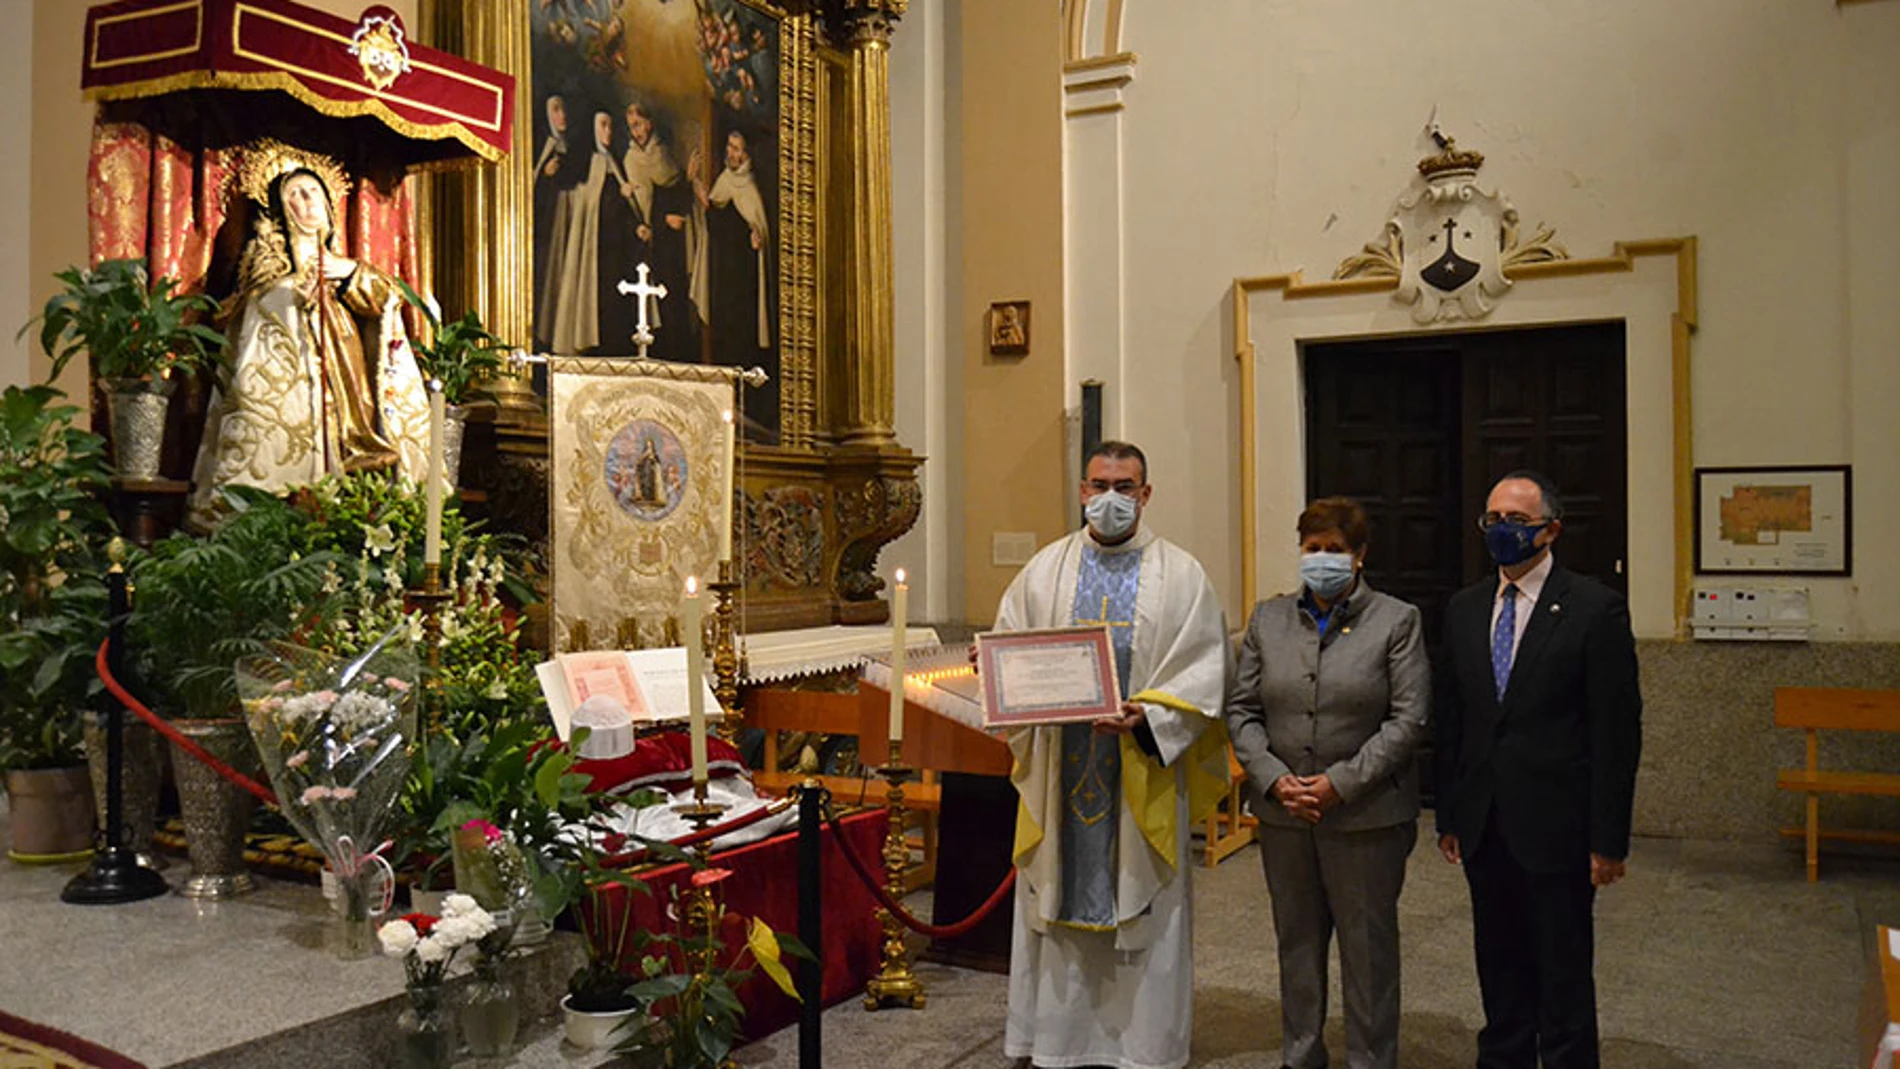 La rectora Mª del Rosario Sáez Yuguero, en representación de la UCAV, hace entrega de este reconocimiento al Prior del Convento de Carmelitas de la Casa Natal de Santa Teresa, el Padre David Jiménez